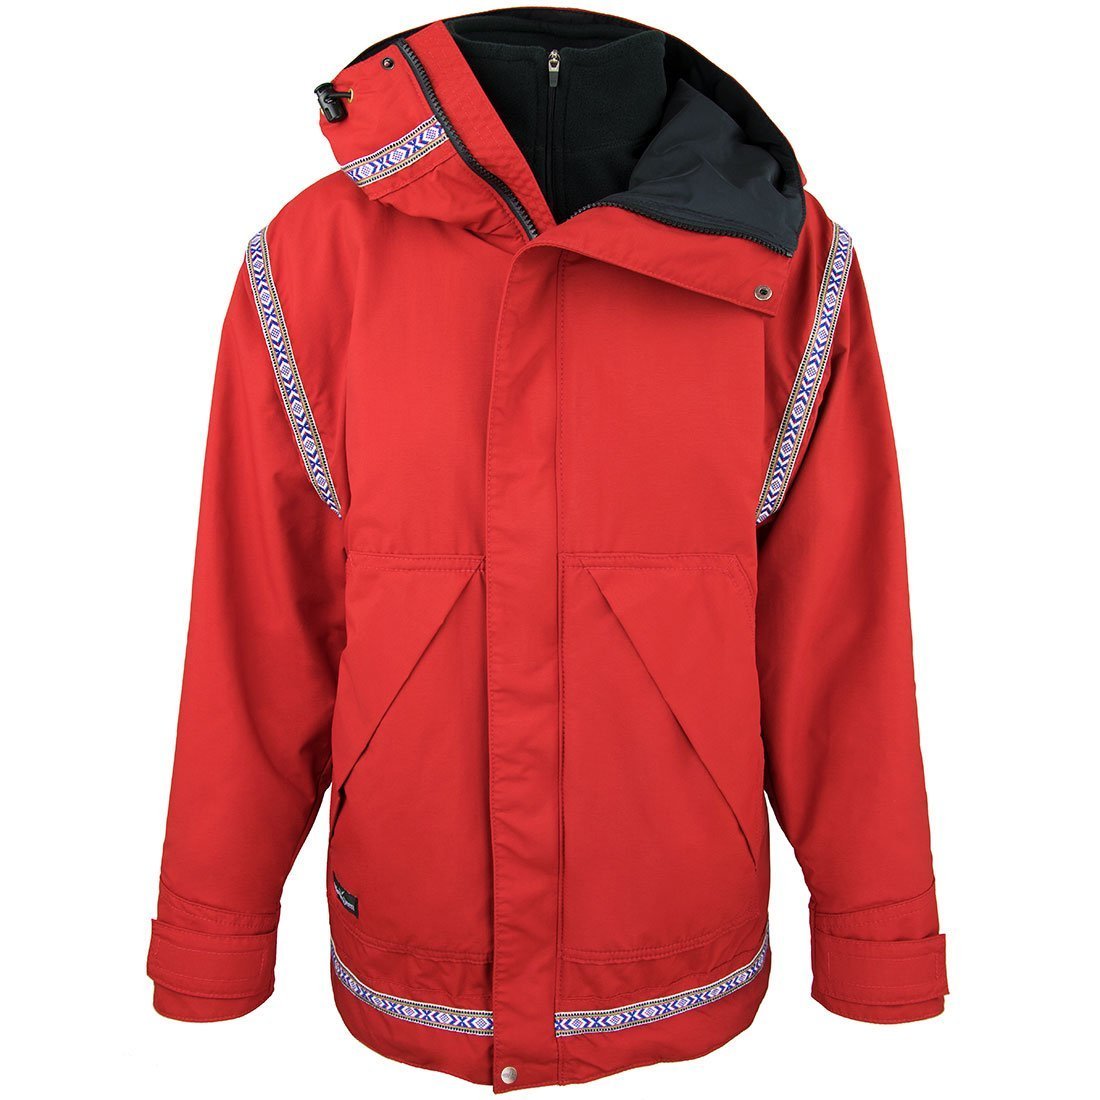 Wintergreen Shearling Fleece Jacket (Women's) - Made in Ely, MN